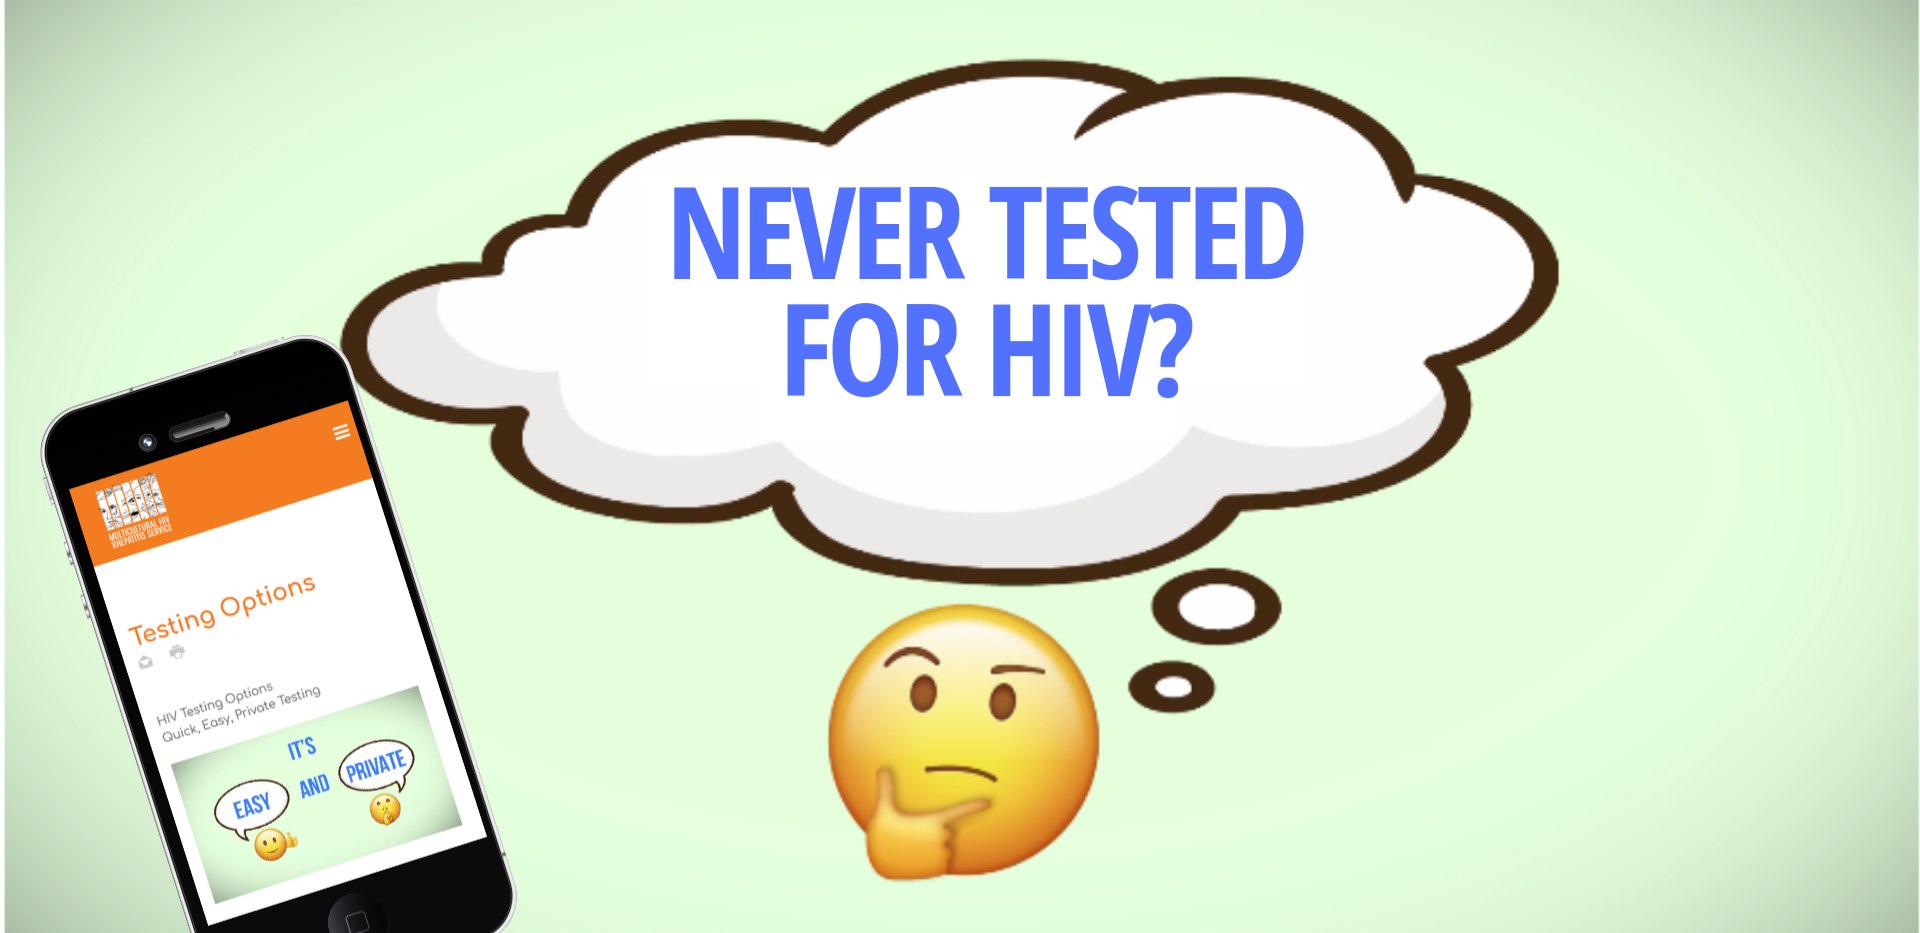 New emoji video encourages HIV testing